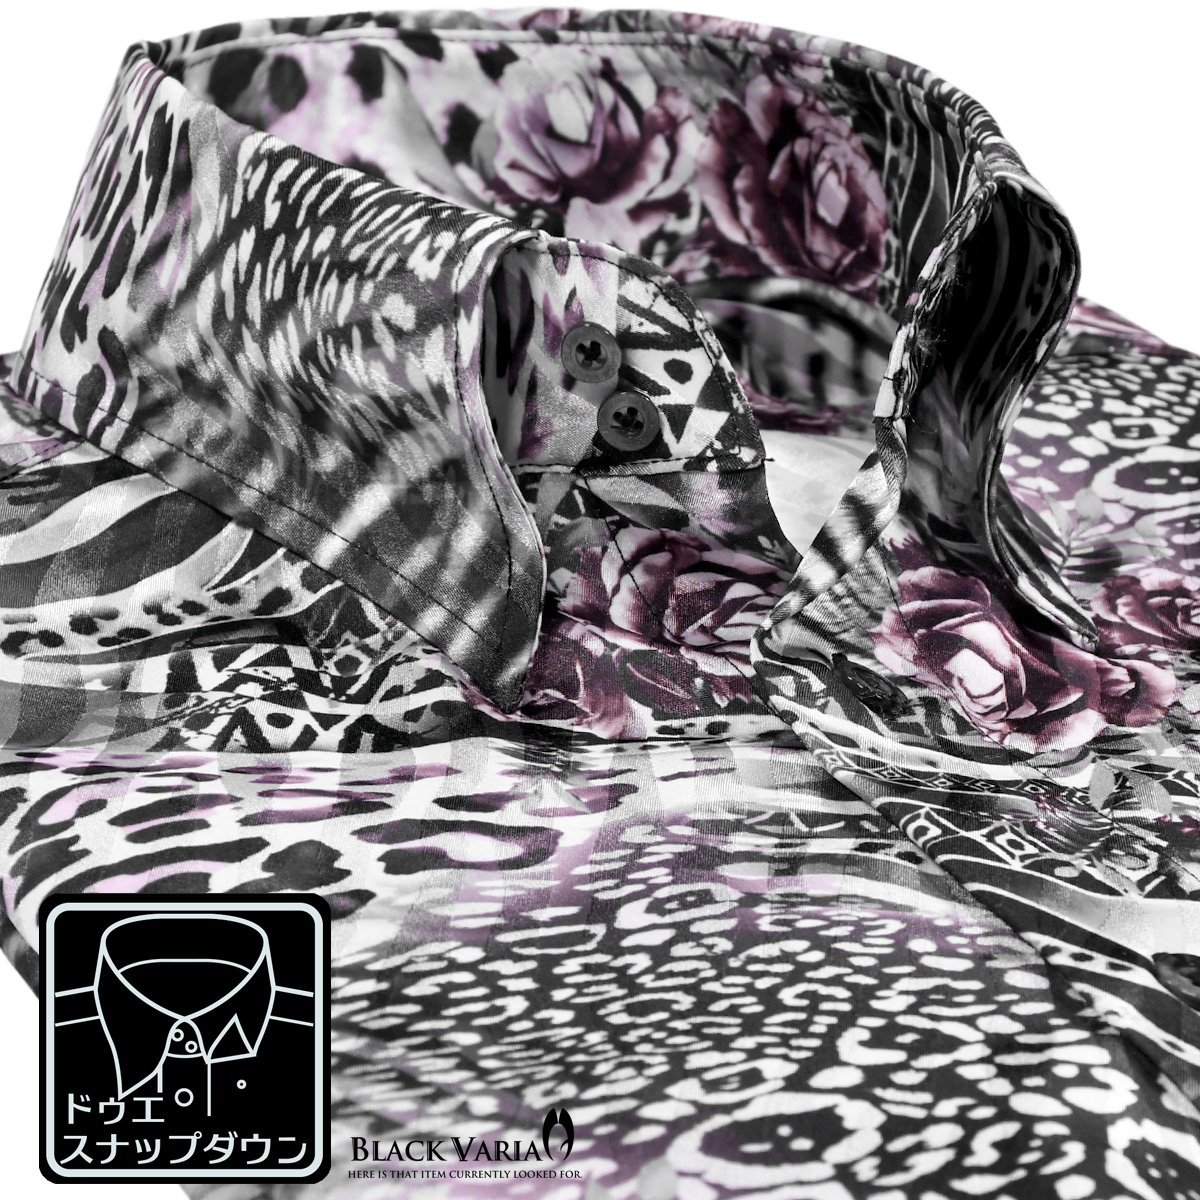 211803-pu BlackVaria ドゥエボットーニ ゼブラ薔薇 豹ヒョウ柄 サテンドレスシャツ 衿先スナップボタン ジャガード メンズ(パープル紫) L